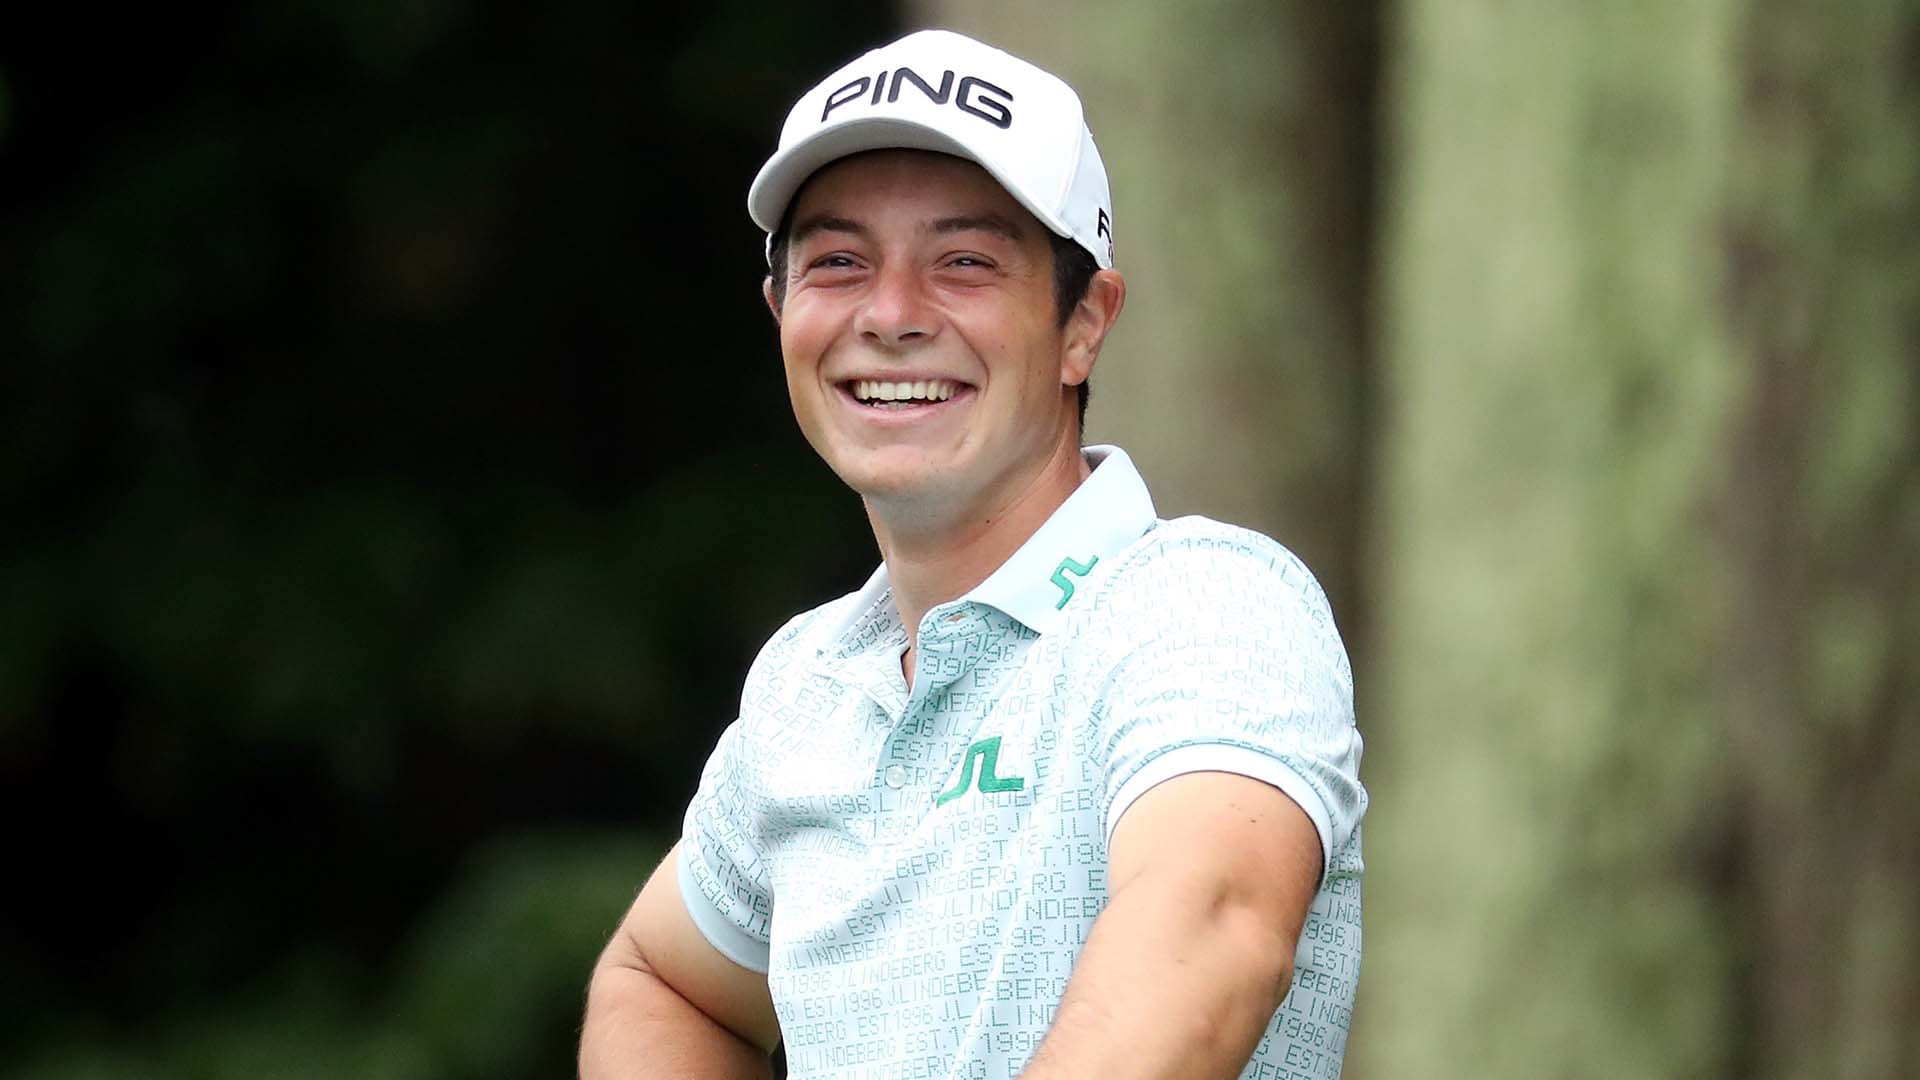 Golfer 22 tuổi hiện đang xếp hạng 60 trên OWGR sau chưa đầy 1 năm lên chuyên nghiệp. (Ảnh: Getty Images)